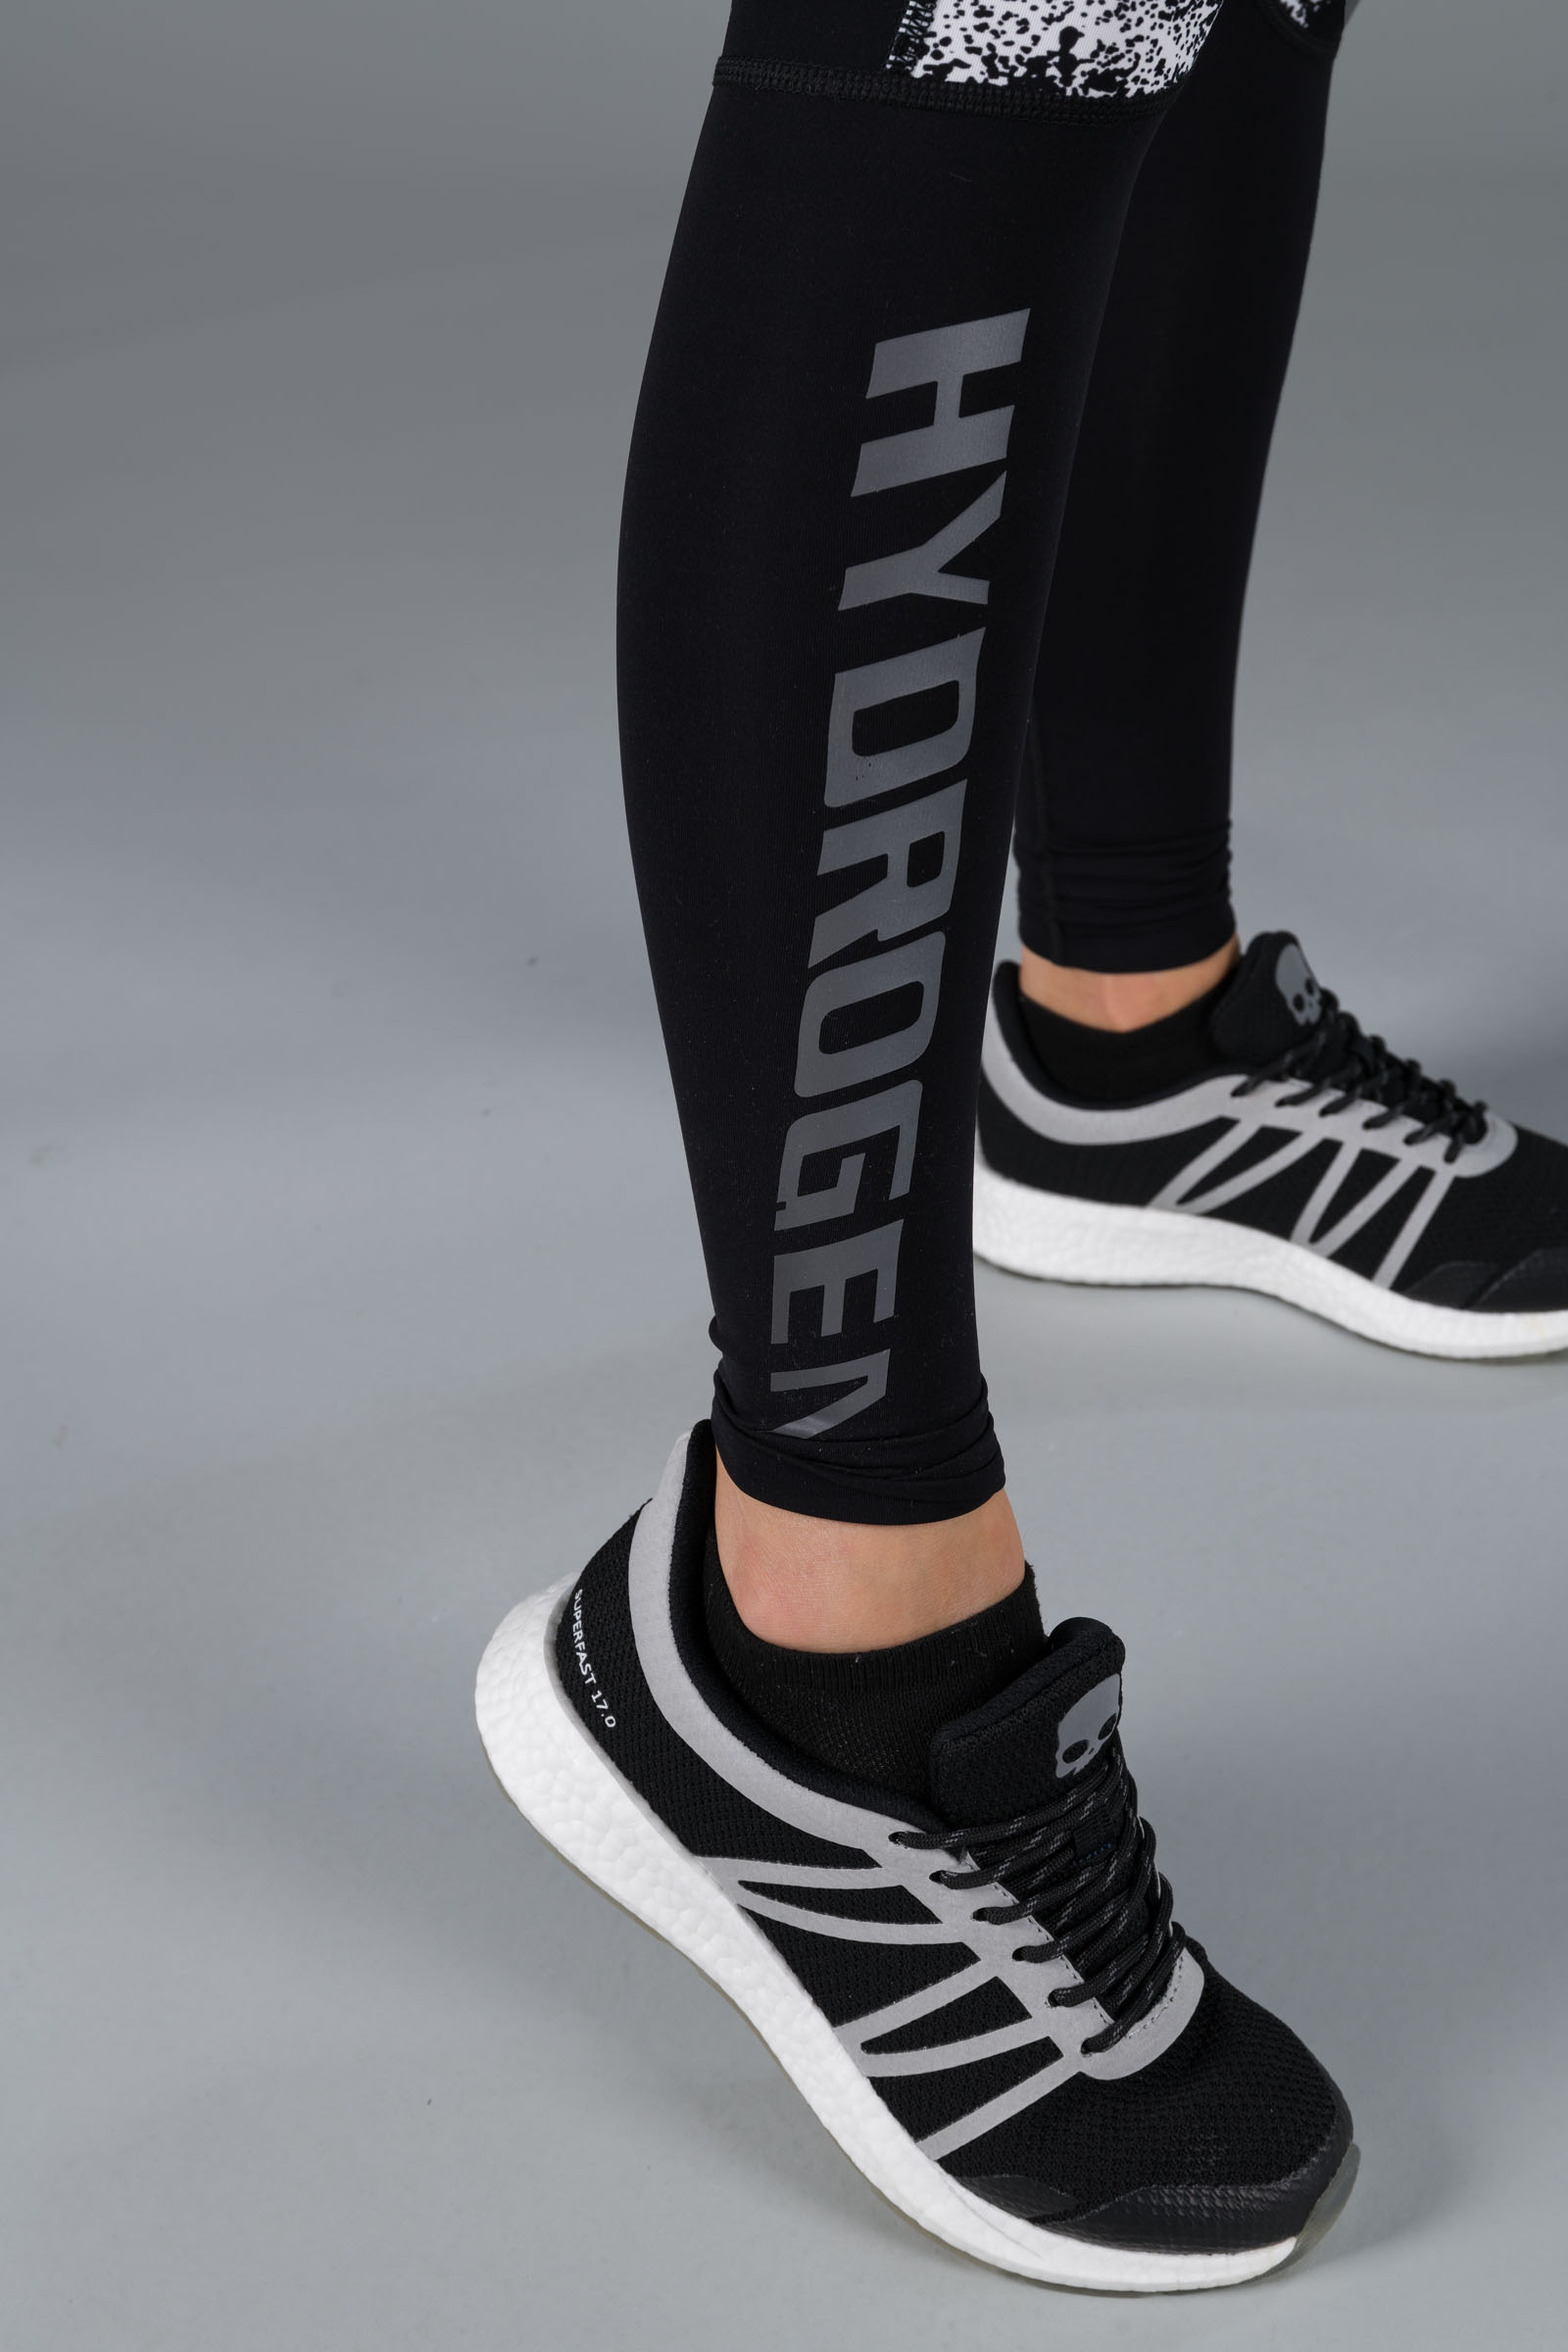 SPRAY LEGGINGS - BLACK,WHITE - Hydrogen - Luxury Sportwear